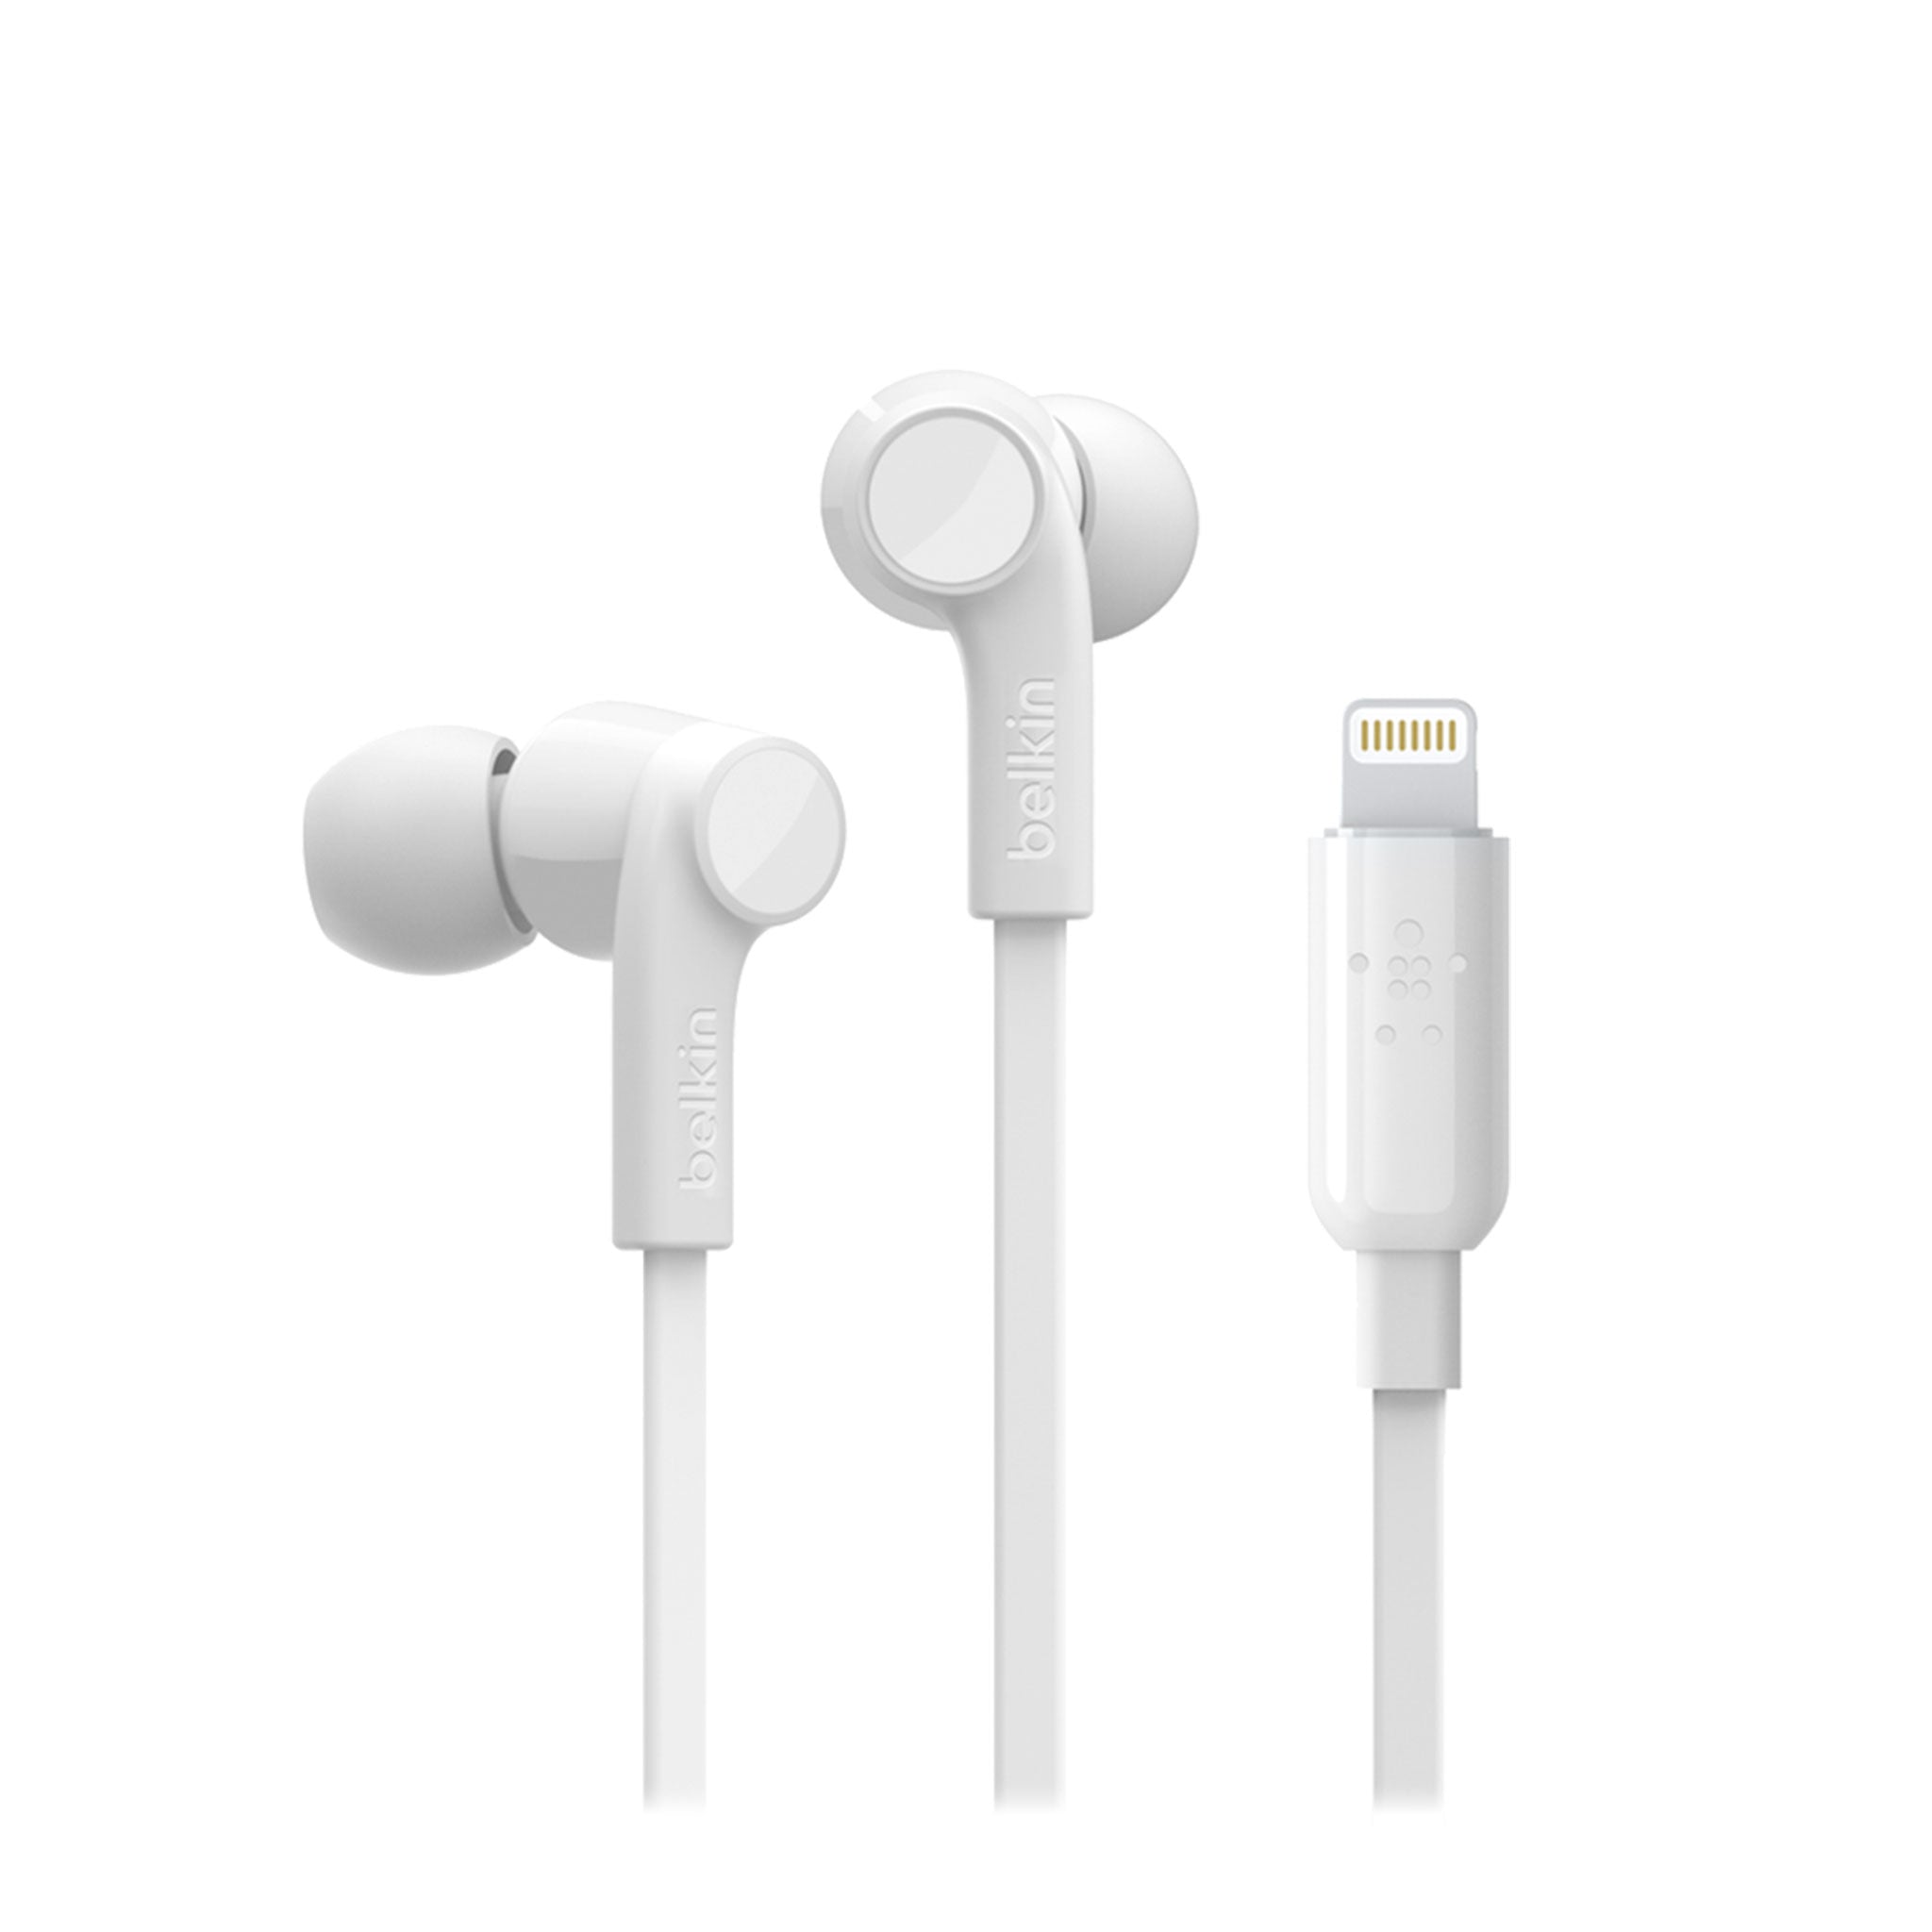 Belkin - Soundform Apple Lightning In Ear Headphones - White